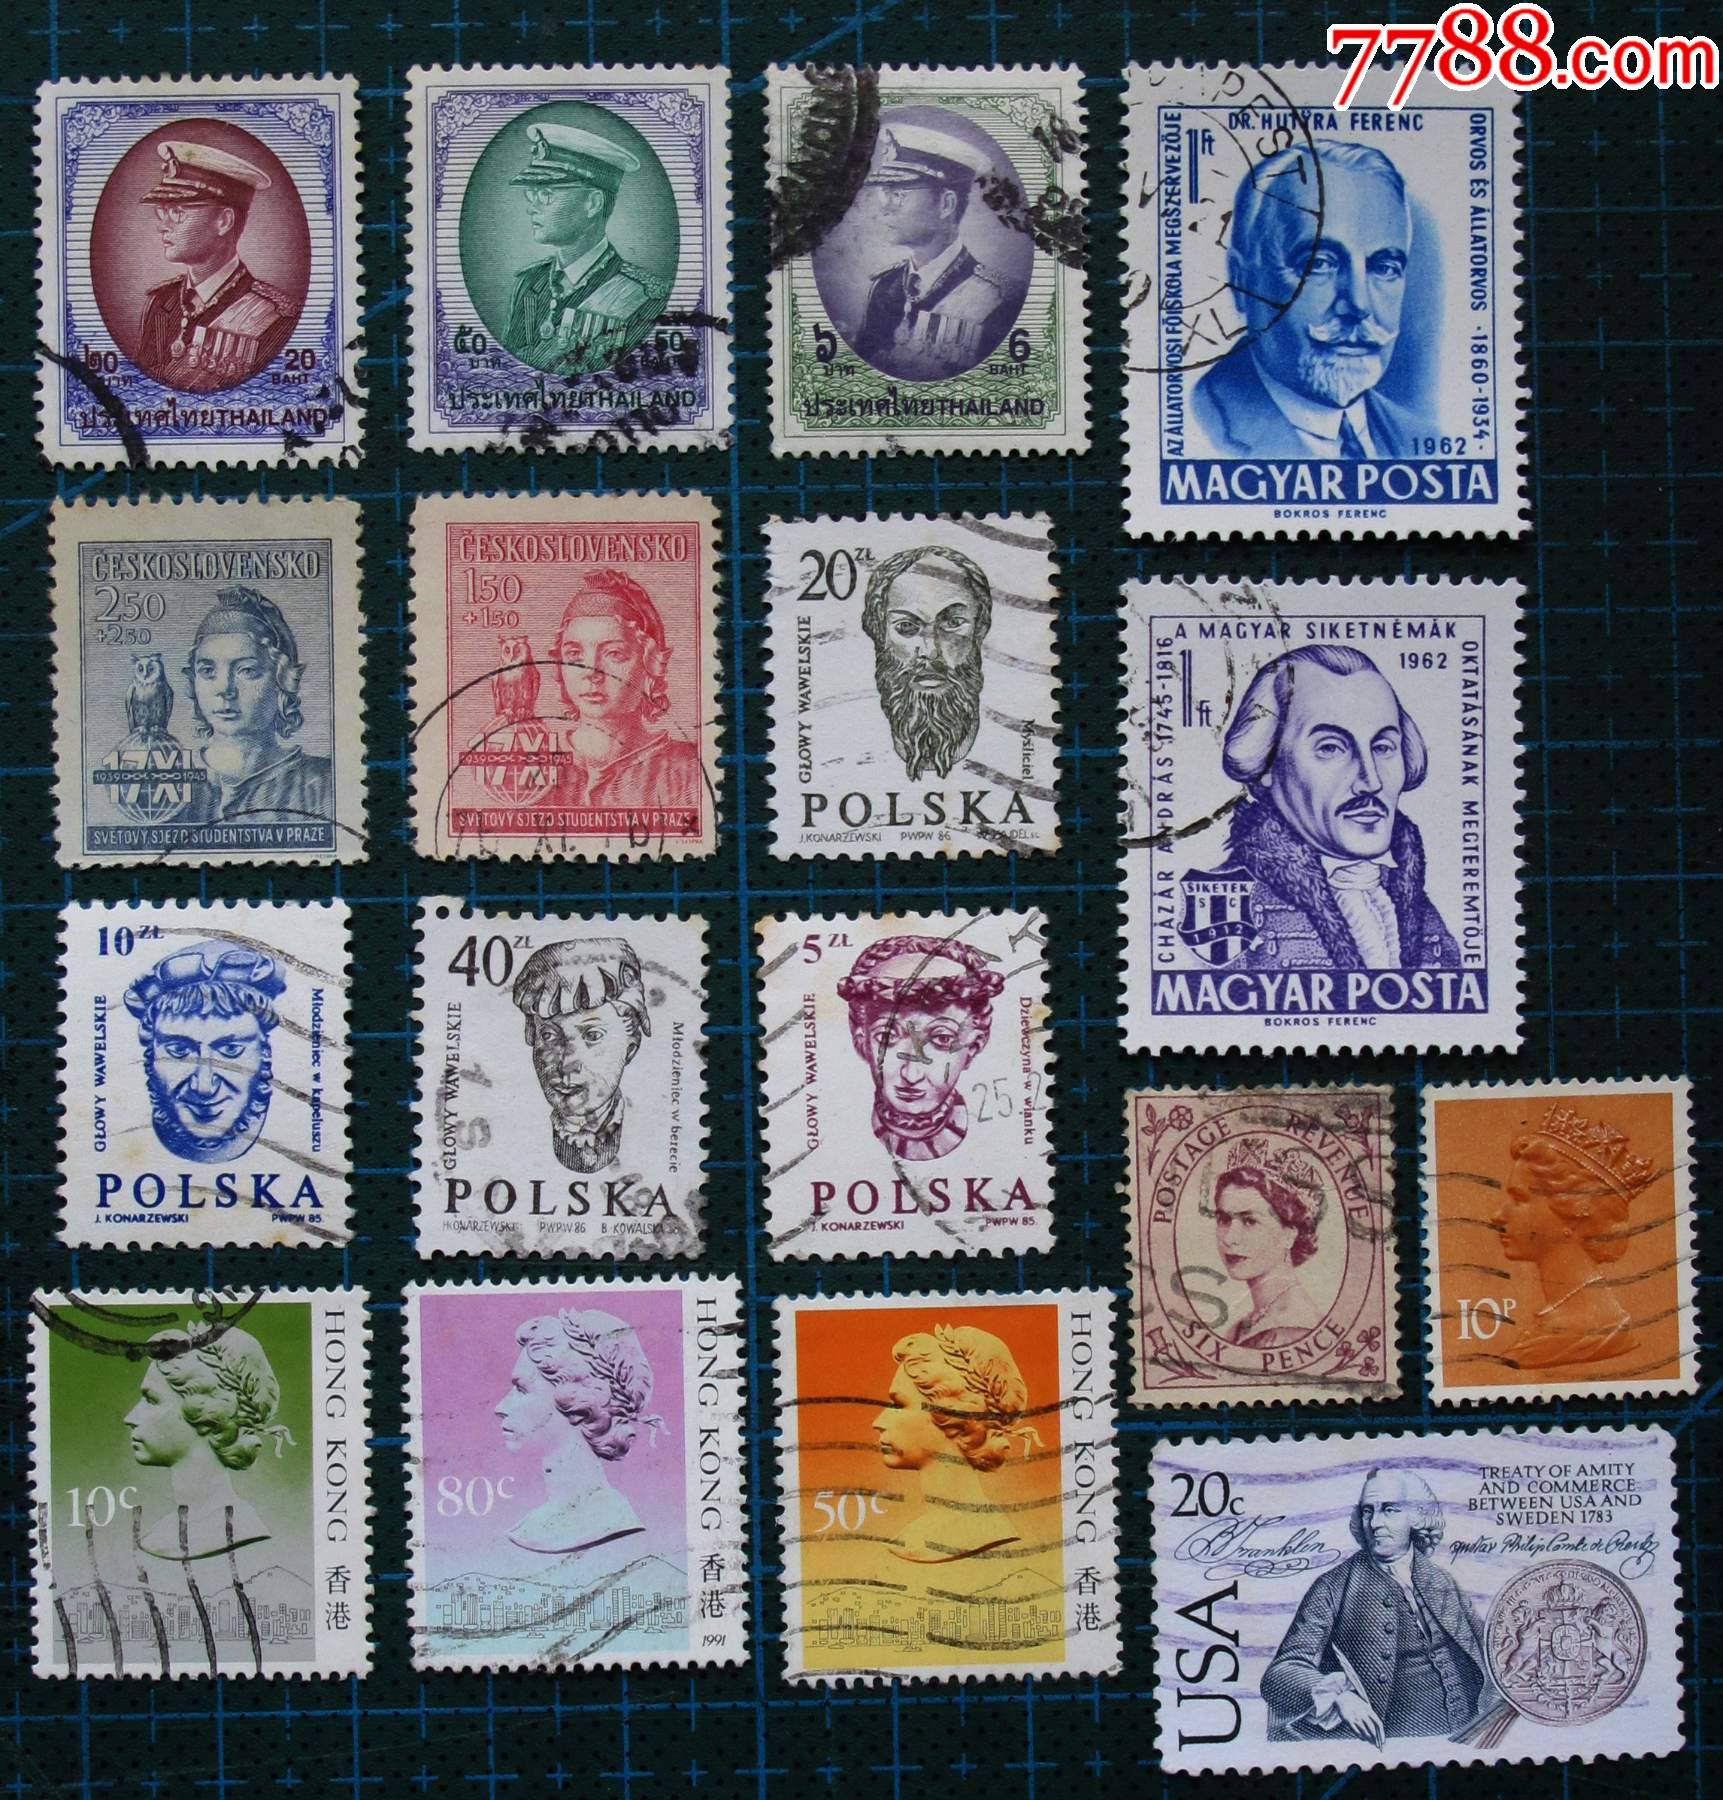 美国邮票大全价格图片图片